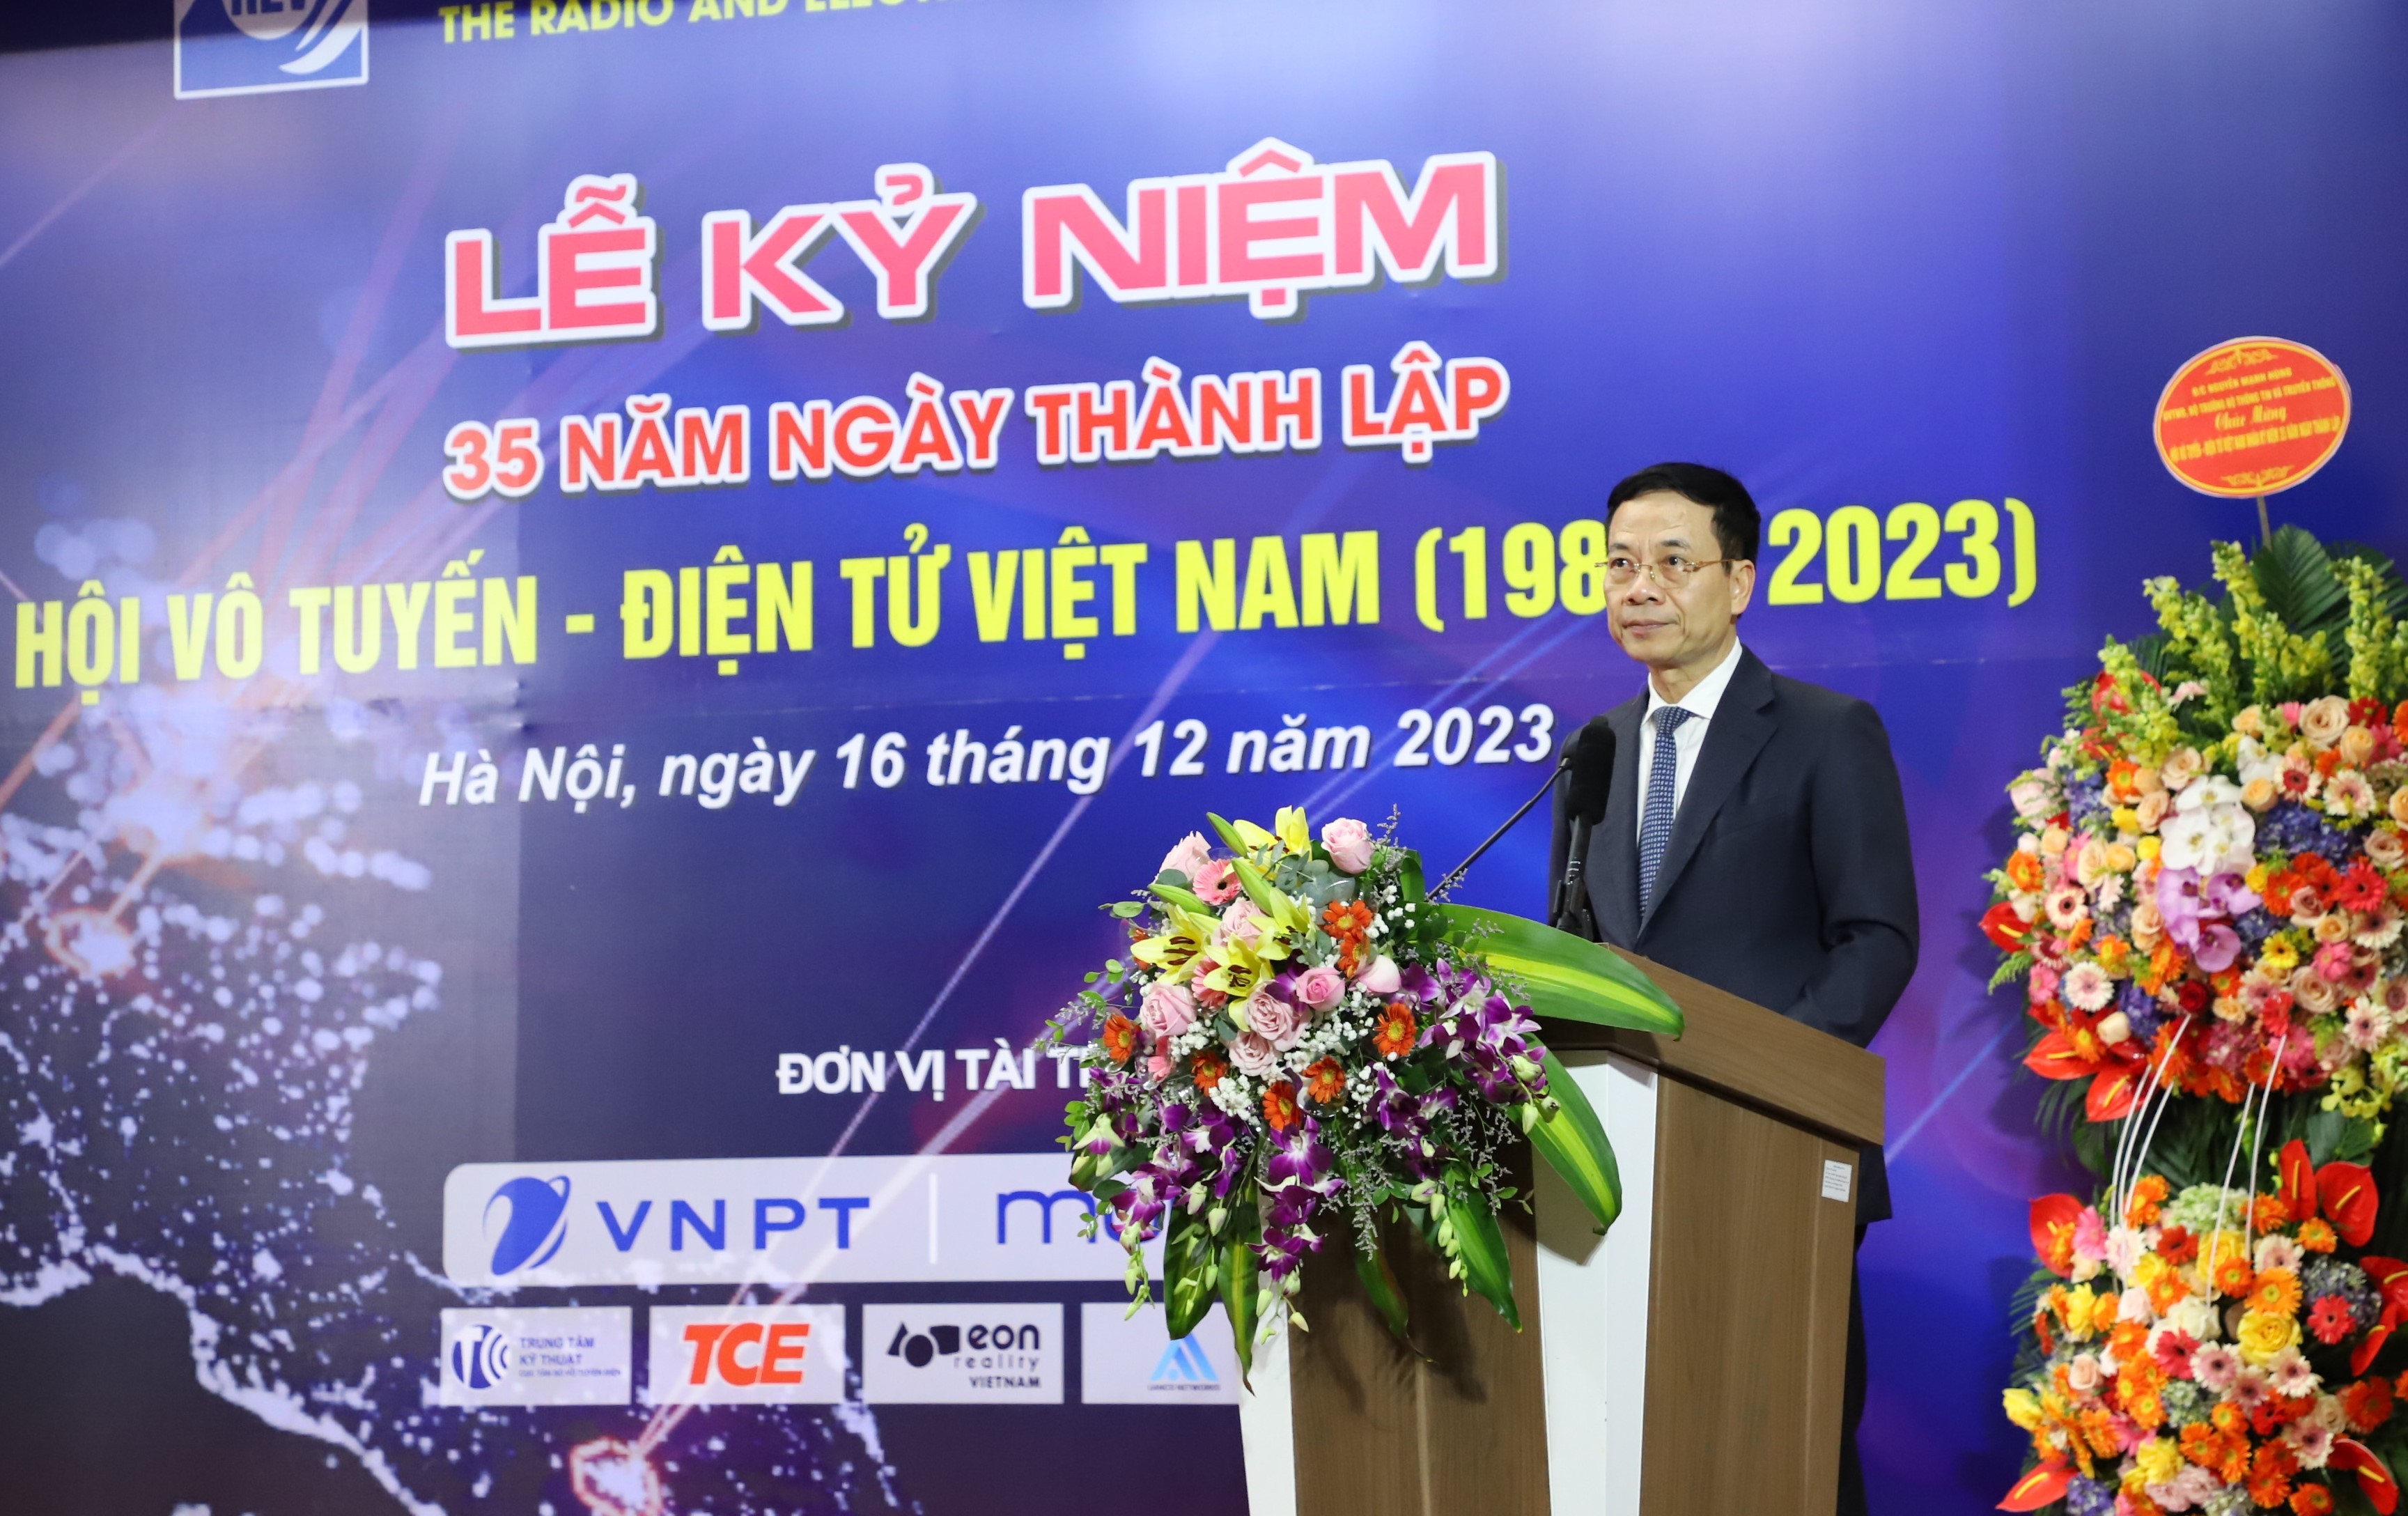 Tích cực góp phần phát triển nền công nghiệp Điện tử - Viễn thông mang thương hiệu Việt Nam